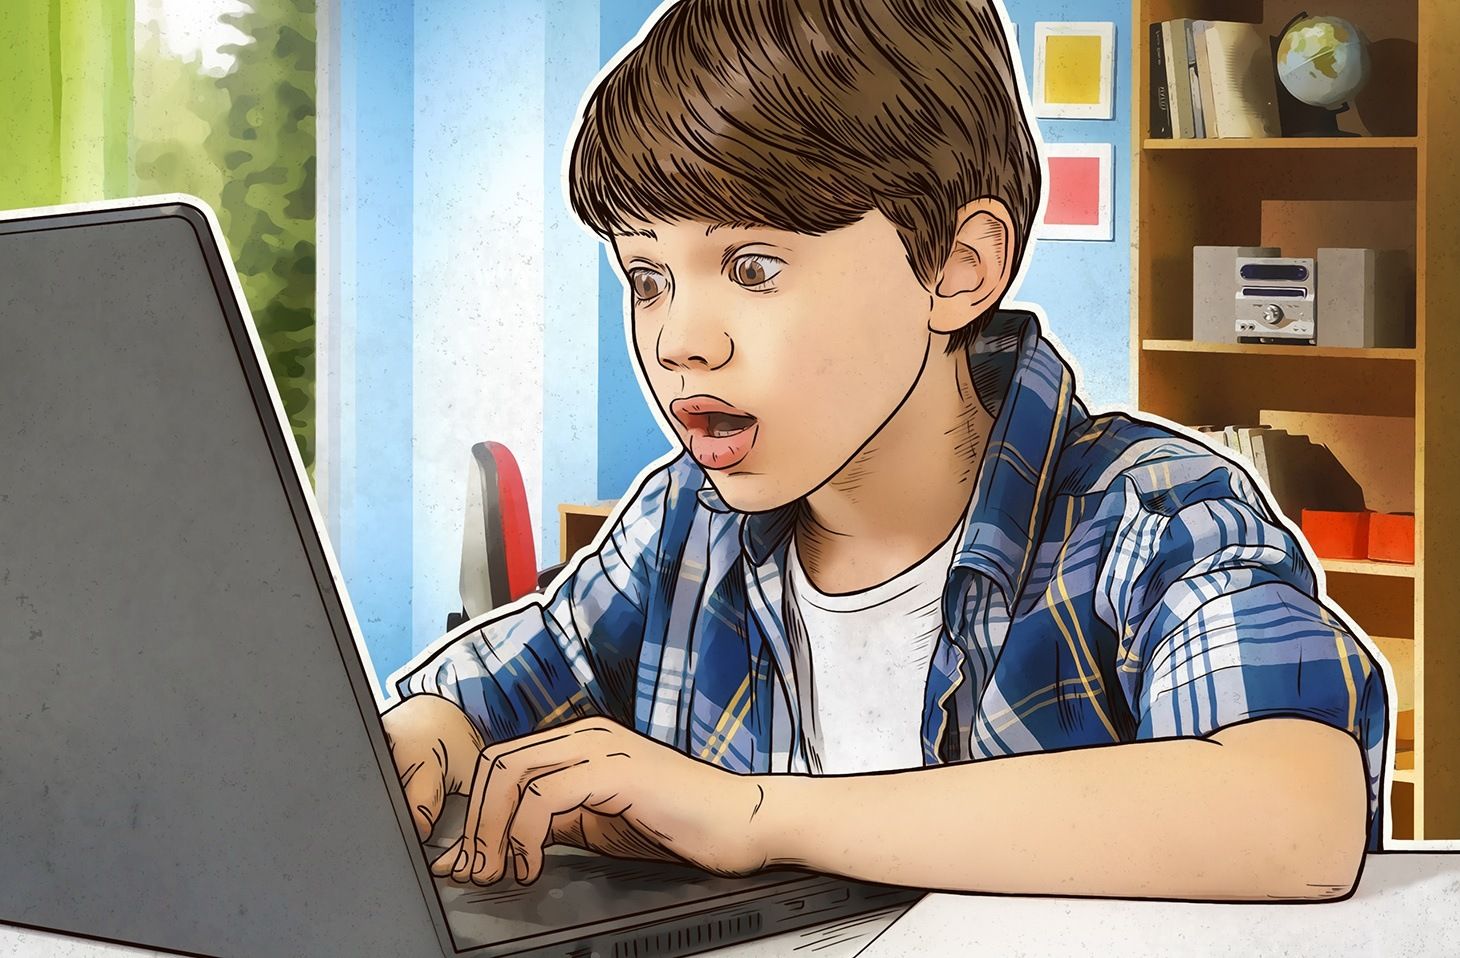 Як уберегти дітей від шкідливого контенту в інтернеті